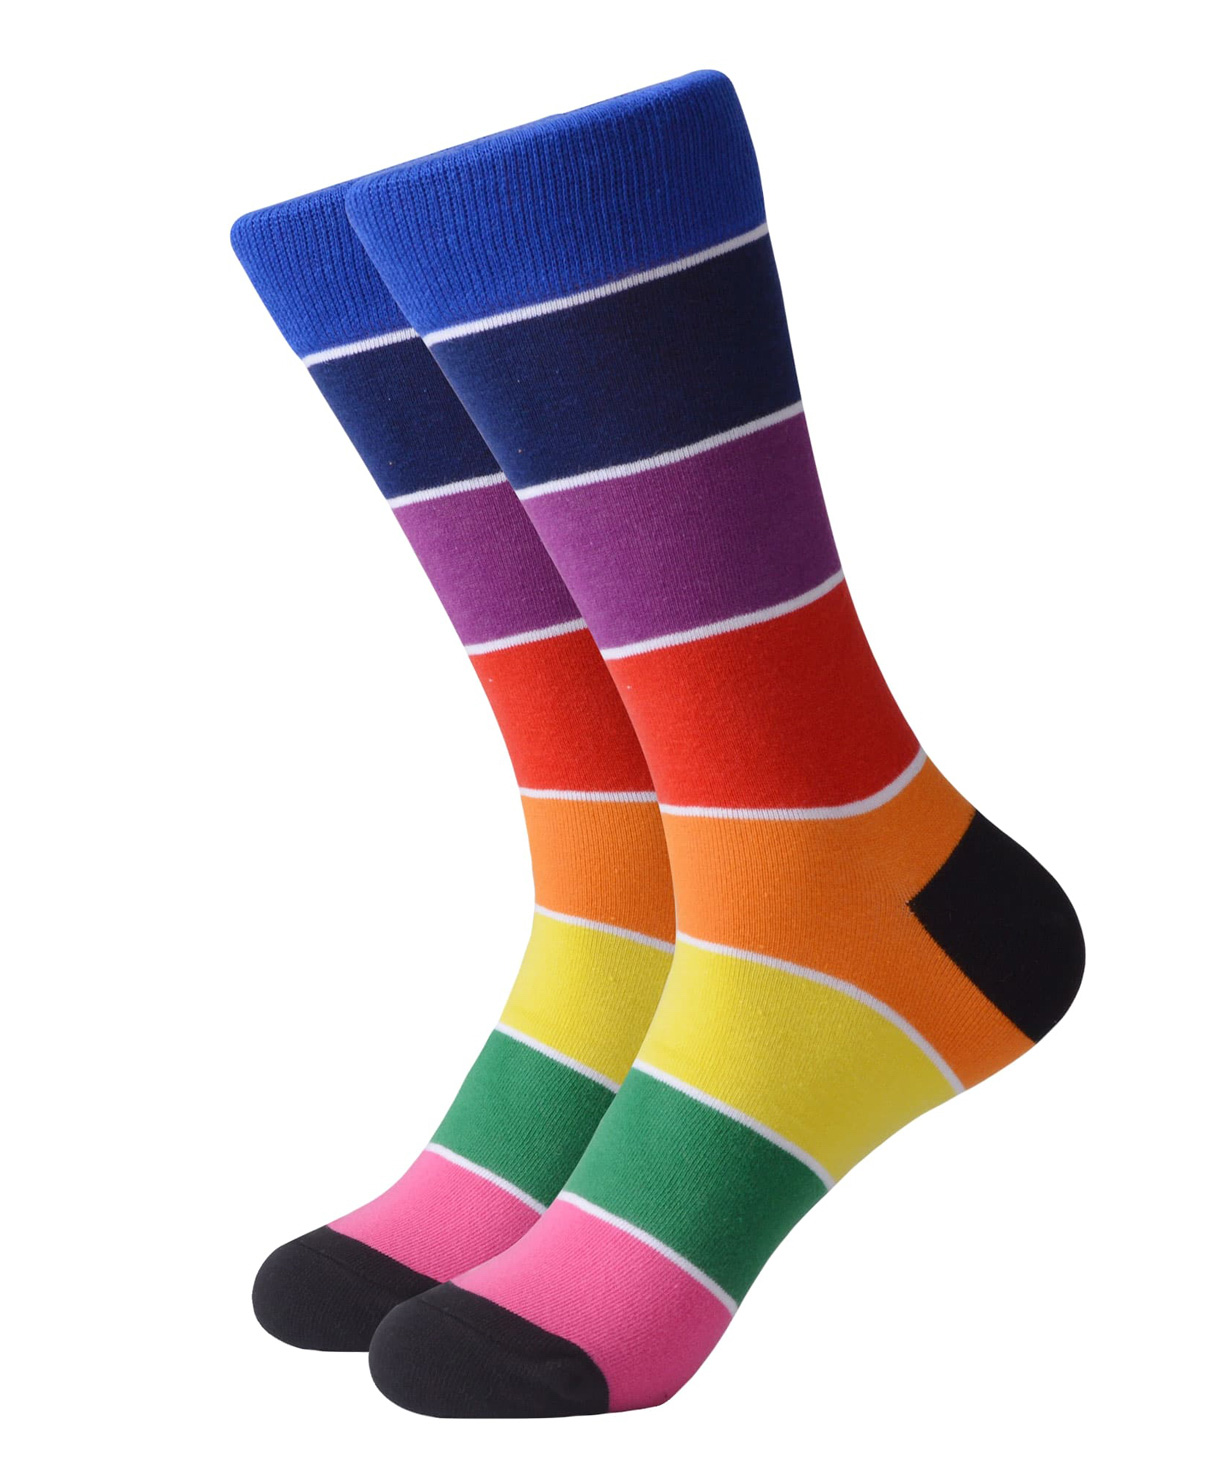 Գուլպաներ «Zeal Socks» գույներ №3